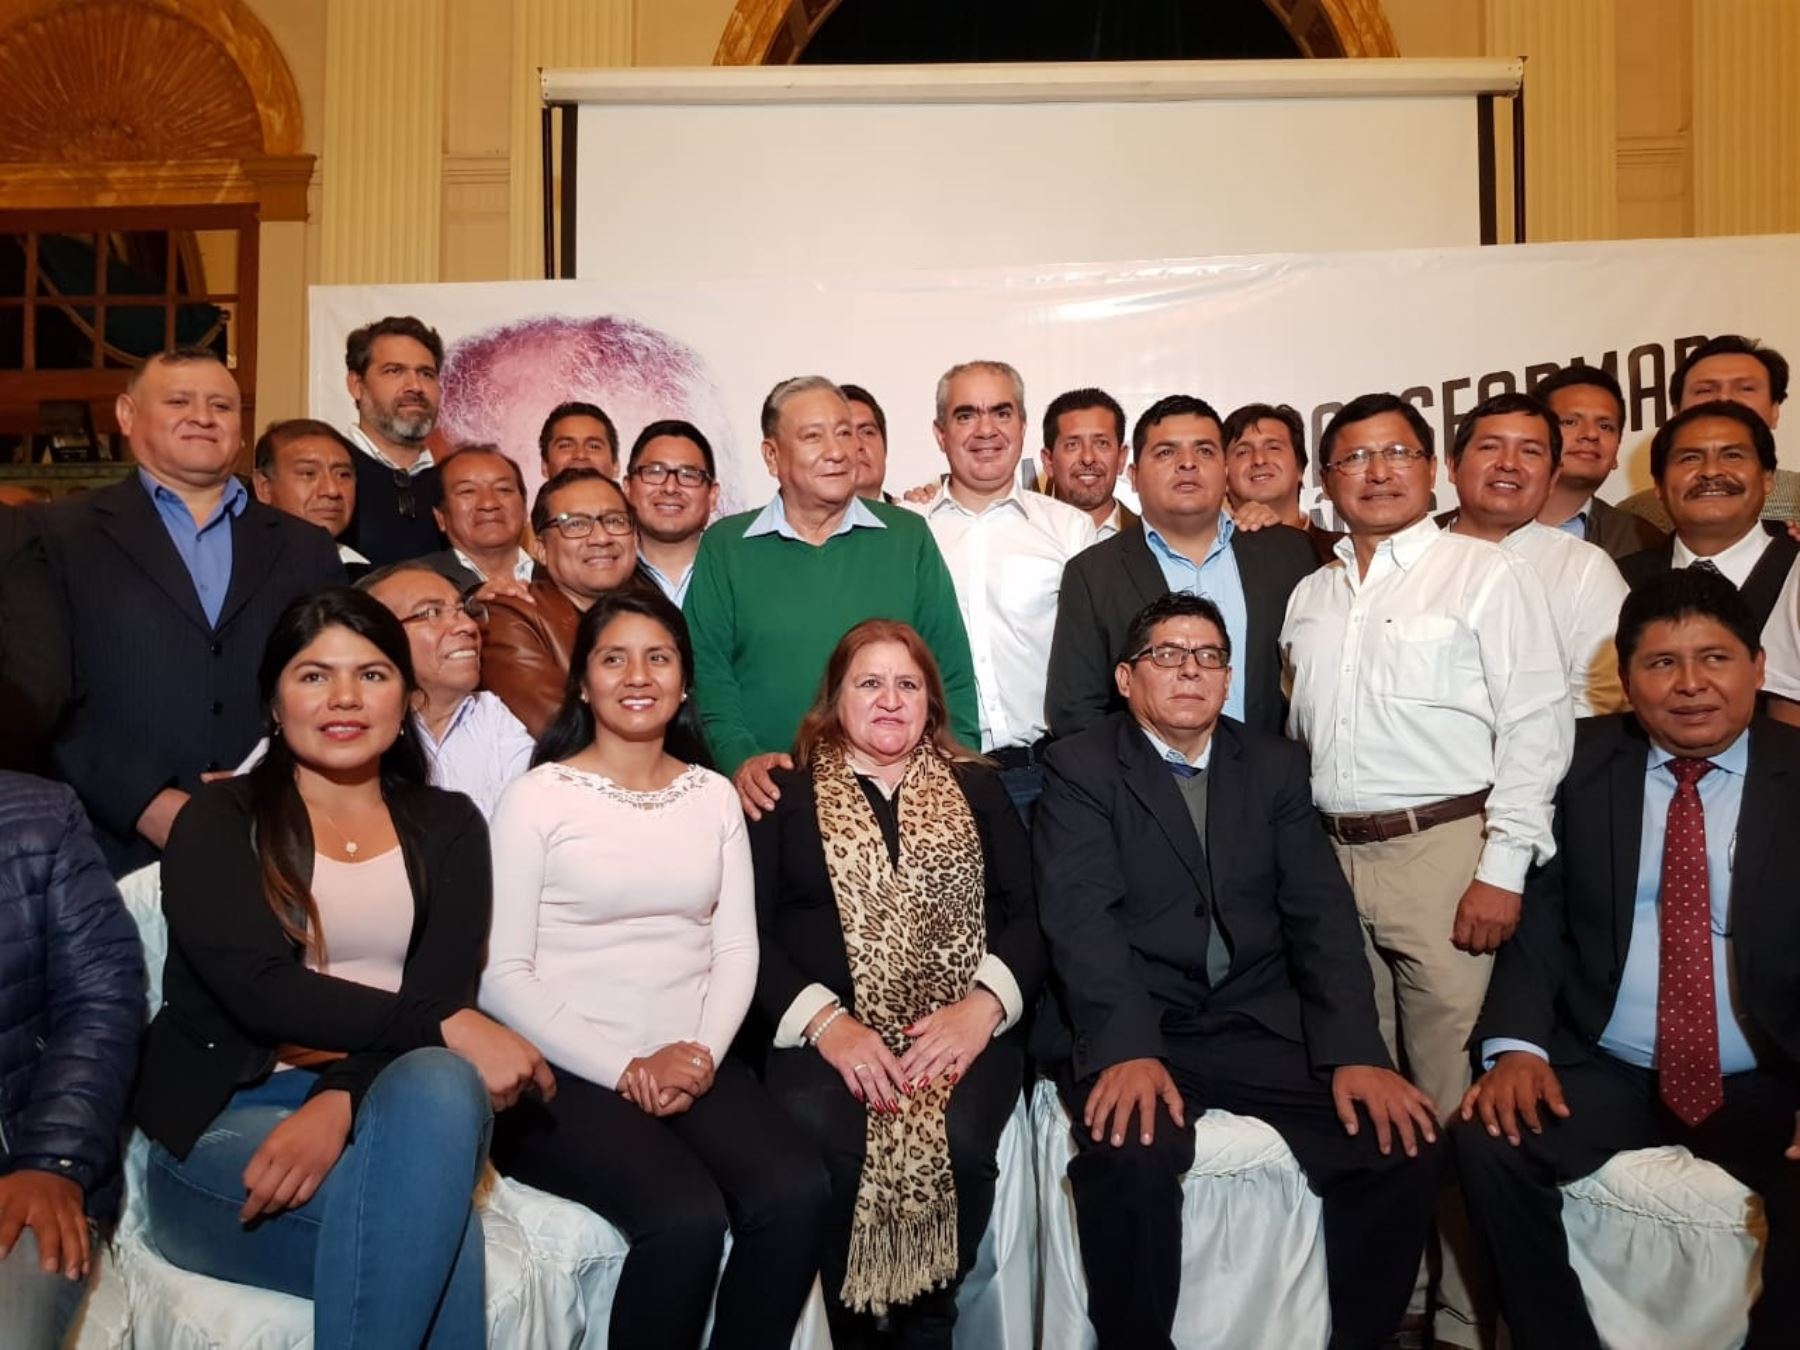 Candidato a la alcaldía de Lima por Siempre Unidos, Manuel Velarde junto a sus candidatos a regidores y distritales.